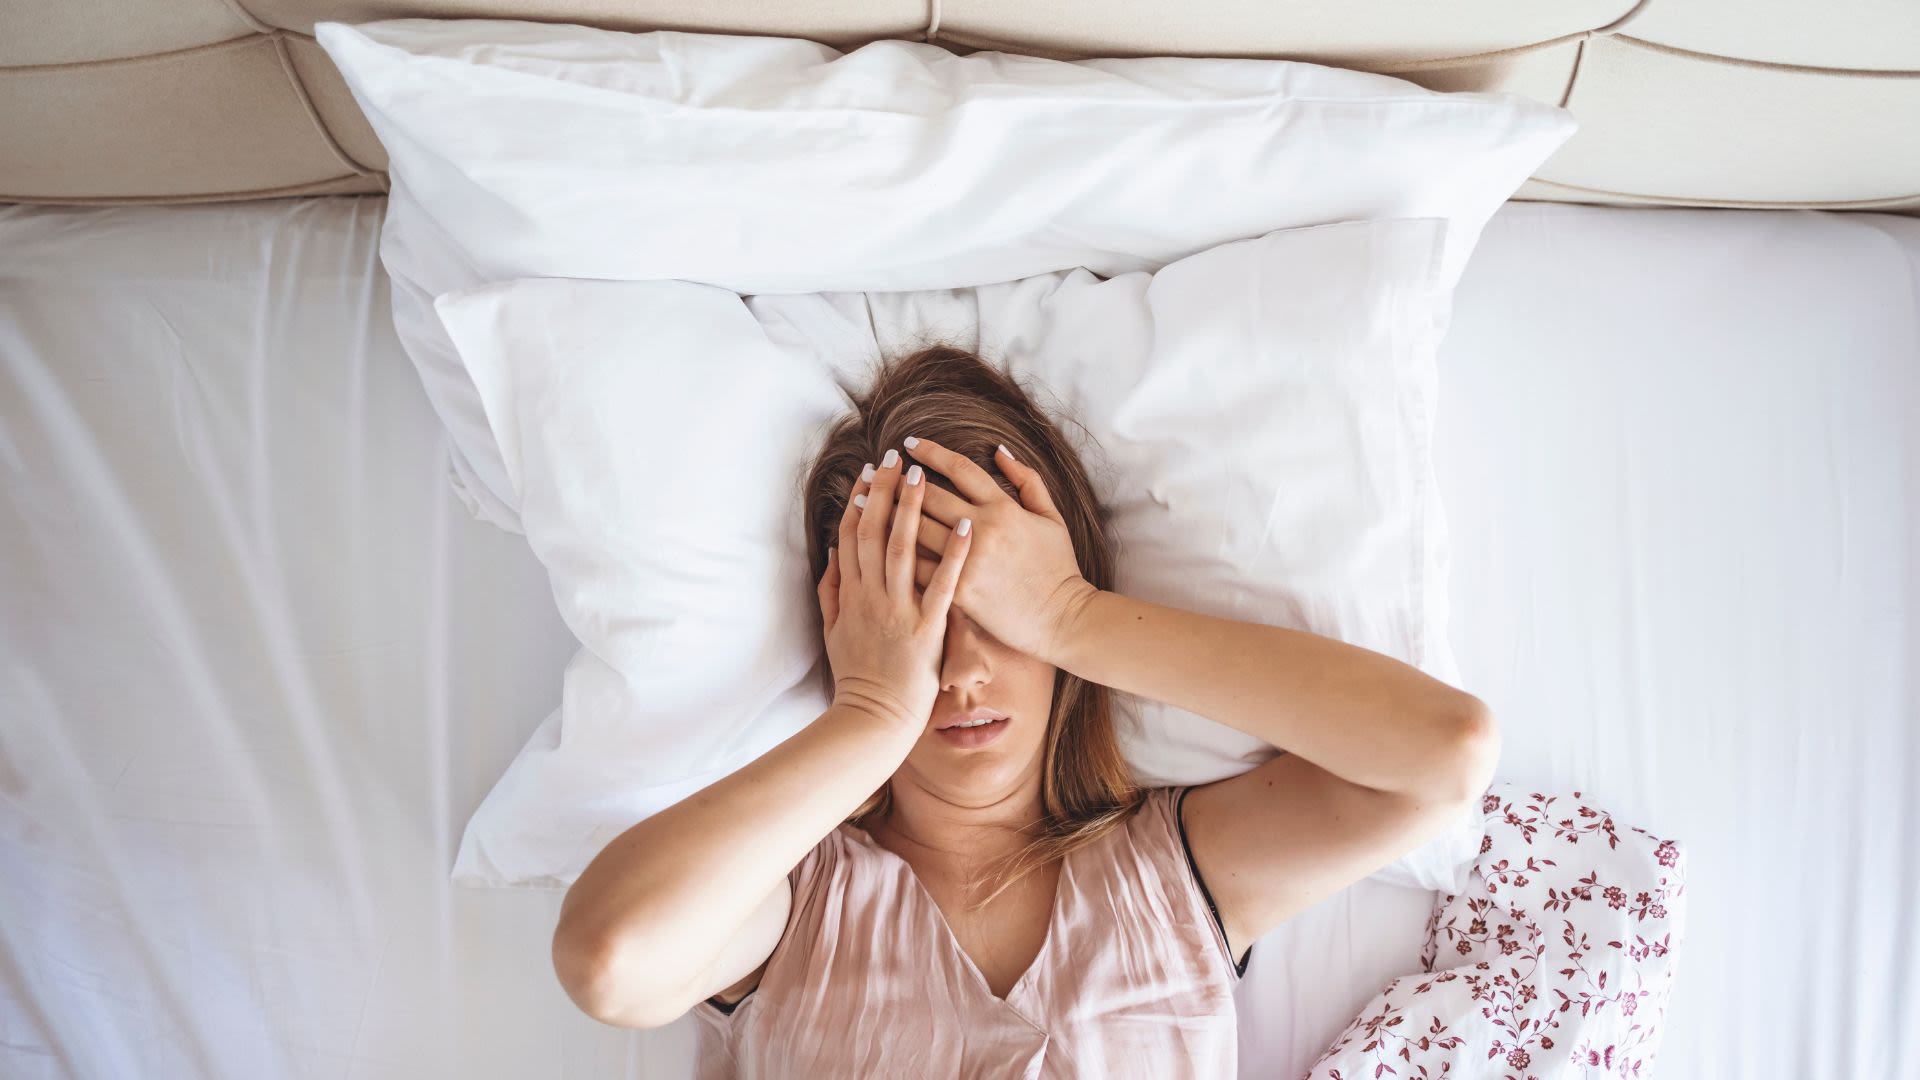 5 signs you'd sleep better on a latex mattress topper, not memory foam